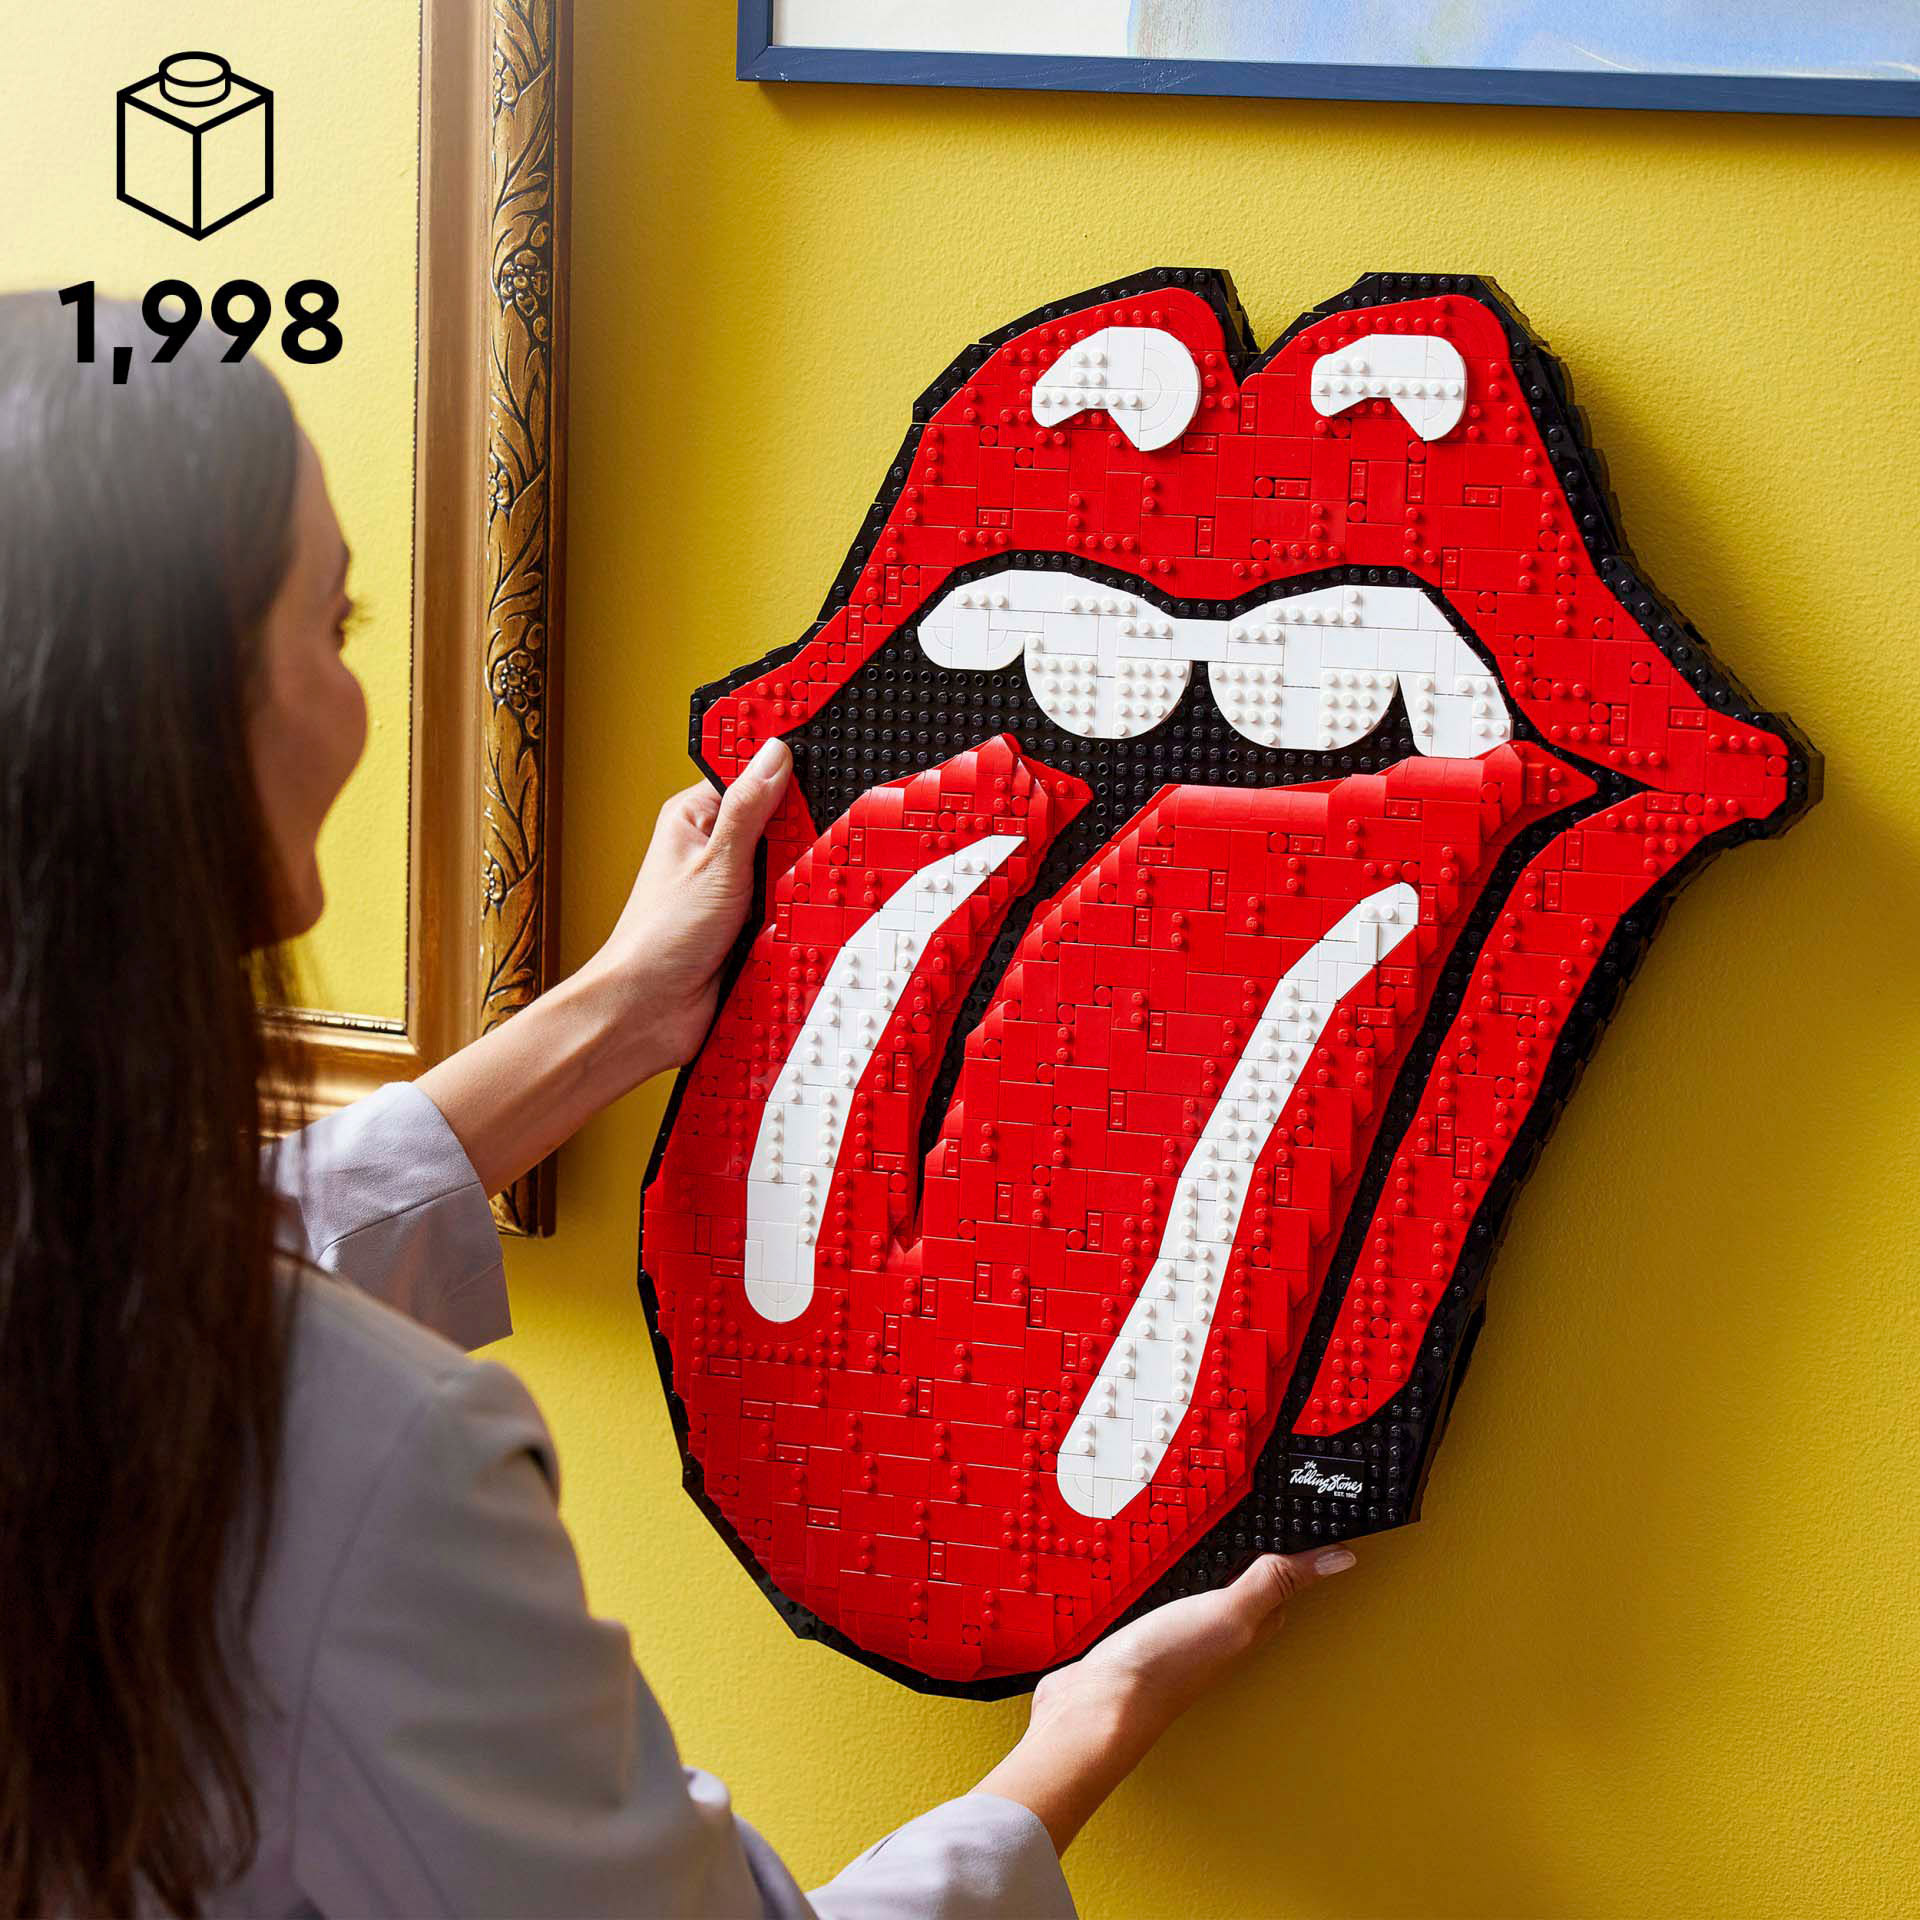 LEGO ART The Rolling Stones Logo, Set per Adulti da Costruire in Mattoncini, Dec 31206, , large